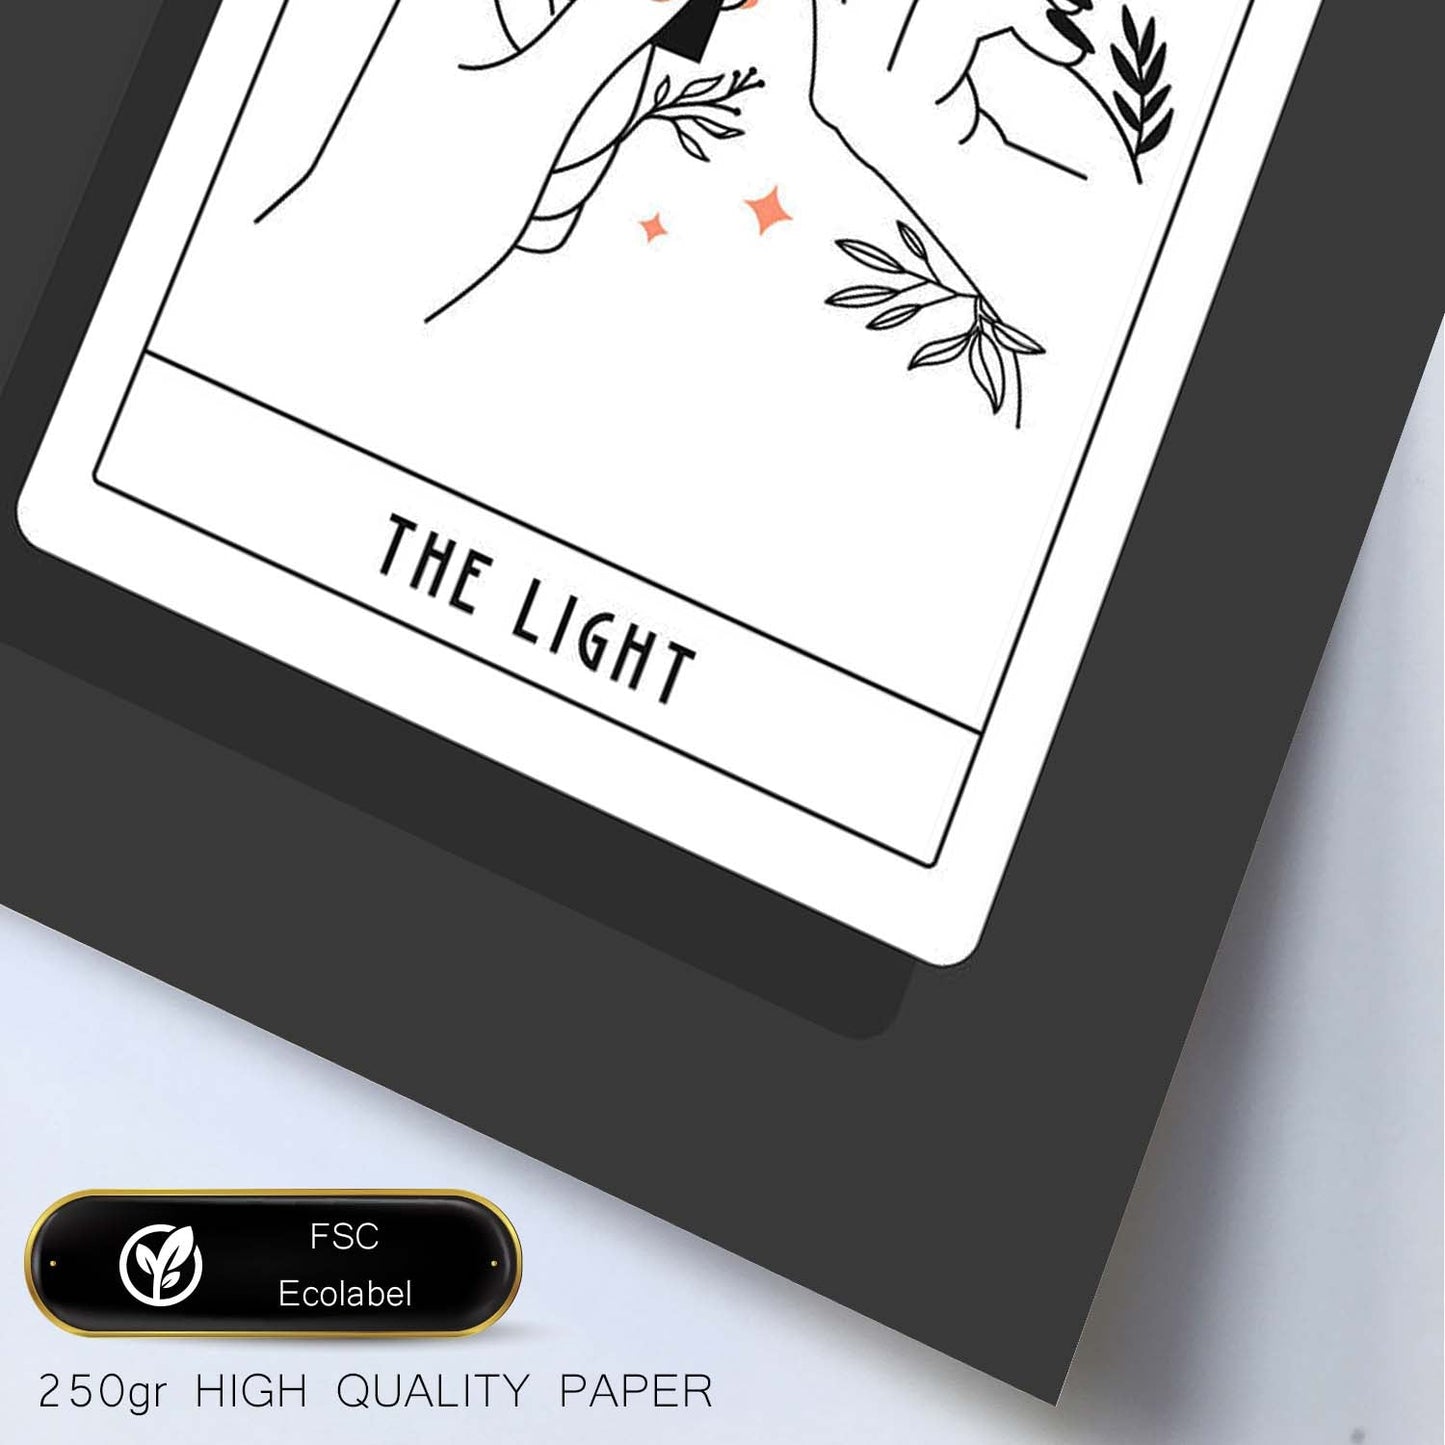 Lámina La luz. Pósters con originales ilustraciones de las cartas Tarot.-Artwork-Nacnic-Nacnic Estudio SL